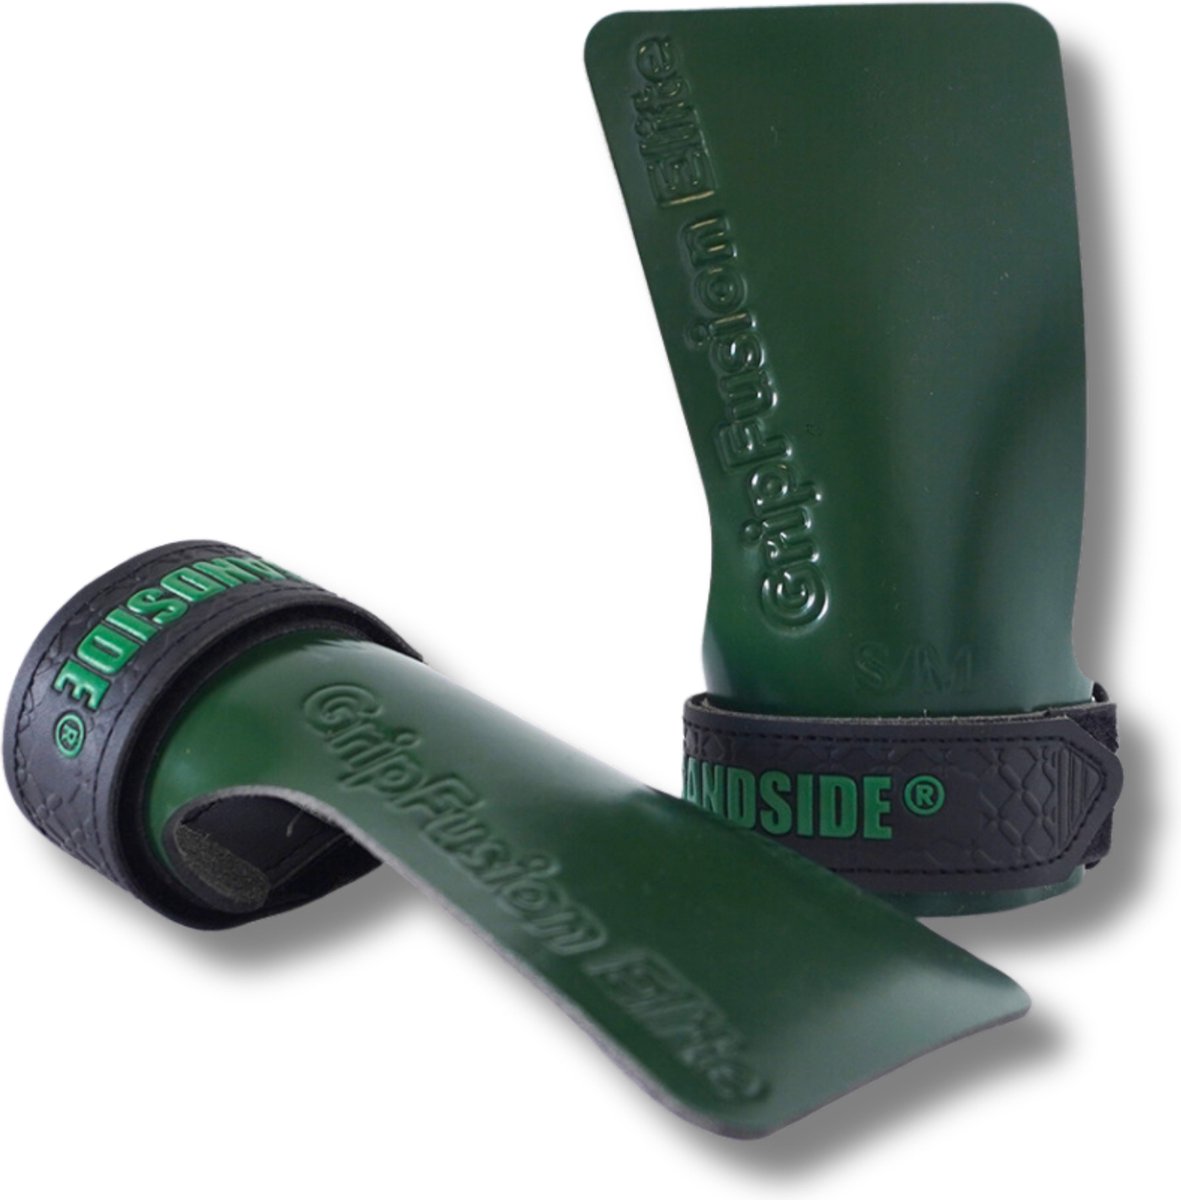 Sandside CrossFit Grips Elite 2.0 - Sticky Hand Grips - No Chalk - Fitness Handschoenen - Fingerless Grips - Army Green L/XL